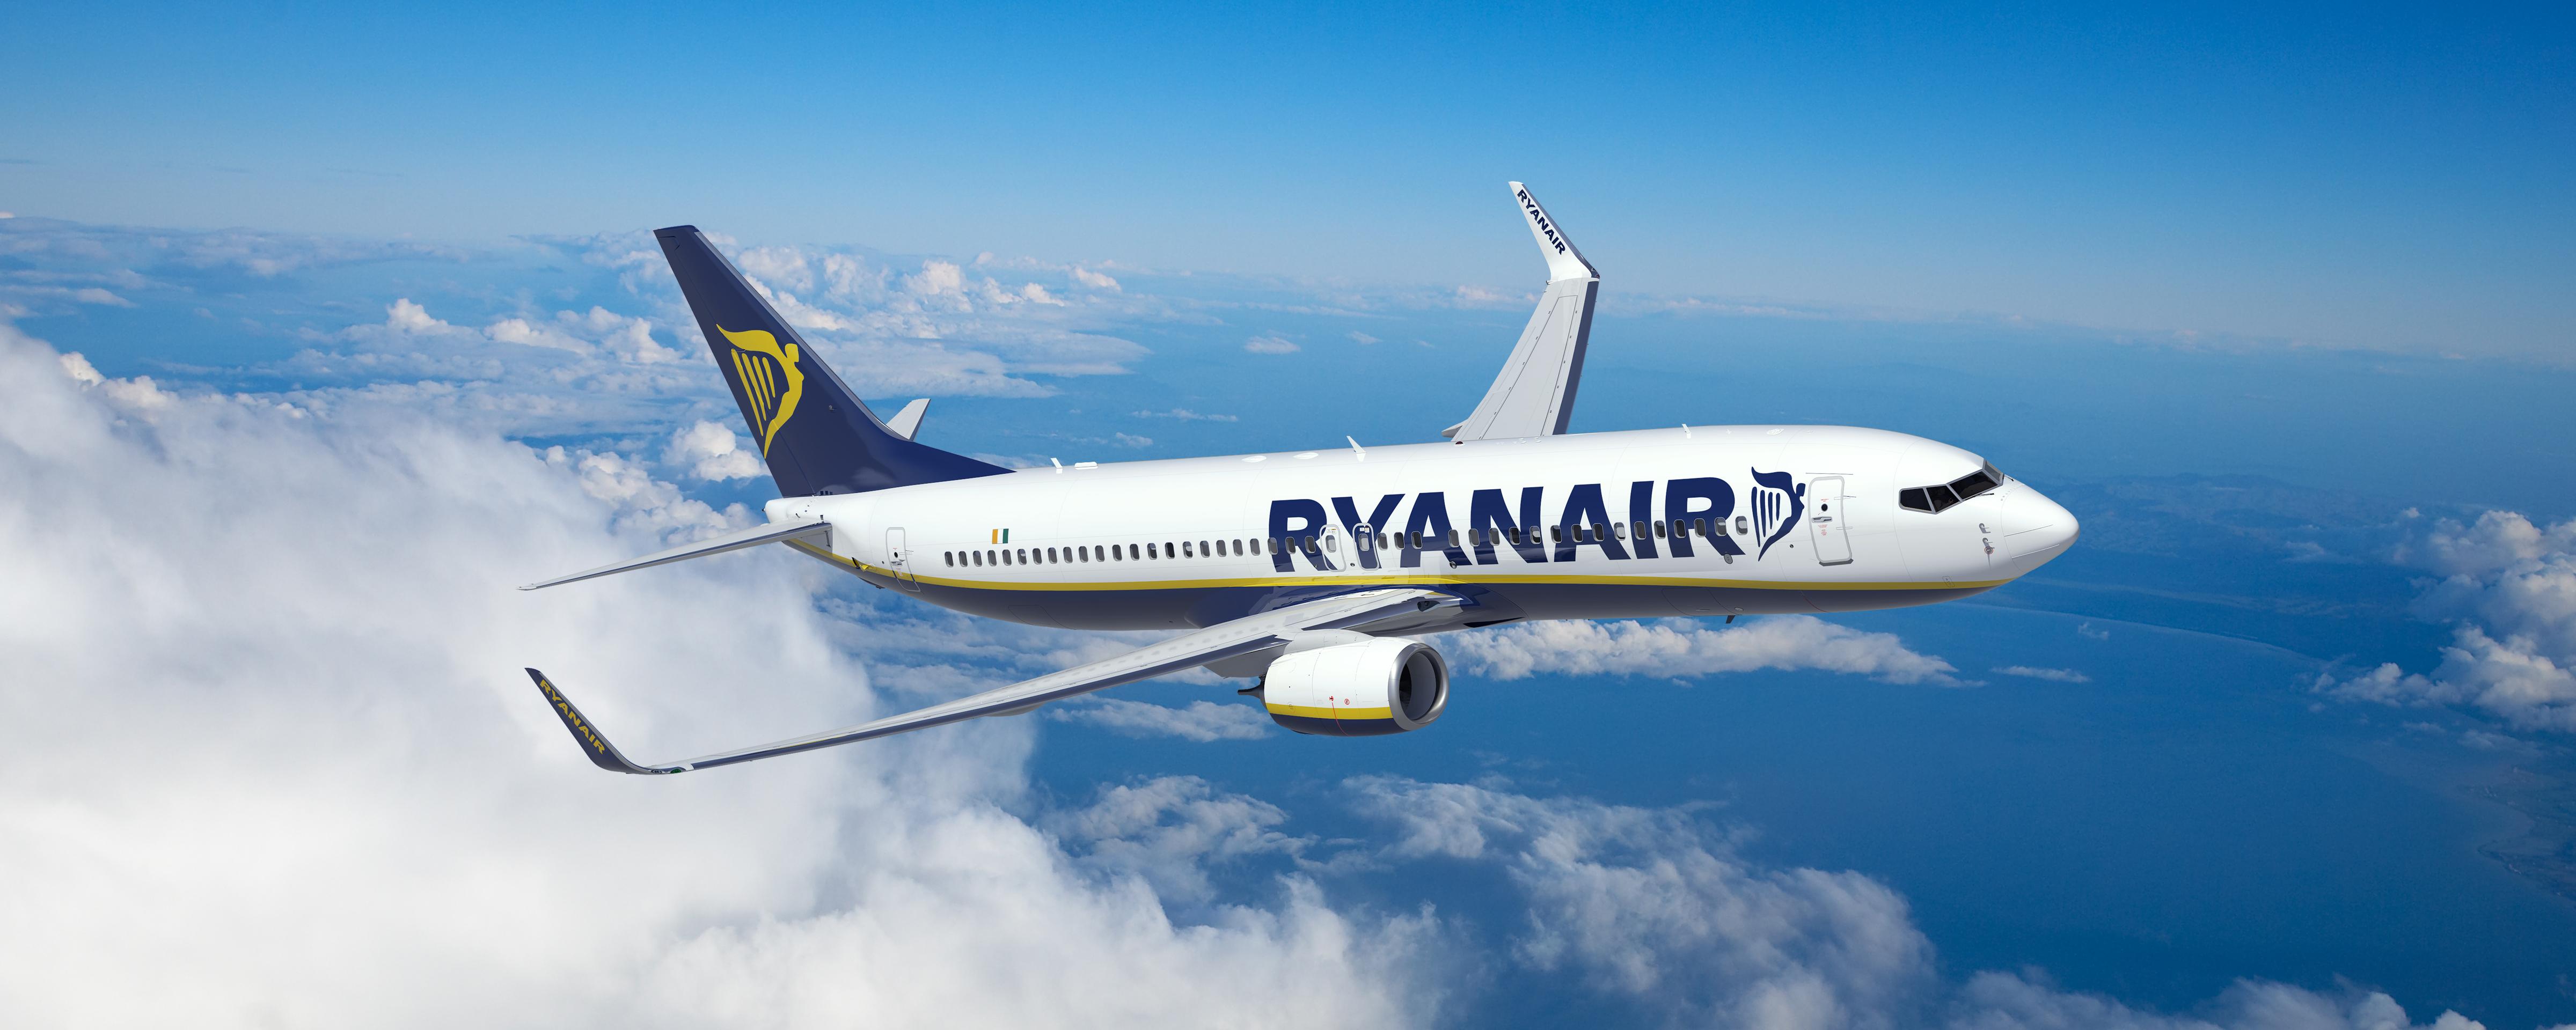 Equipaje de mano de Ryanair - Medidas, precio y cómo evitar pagar